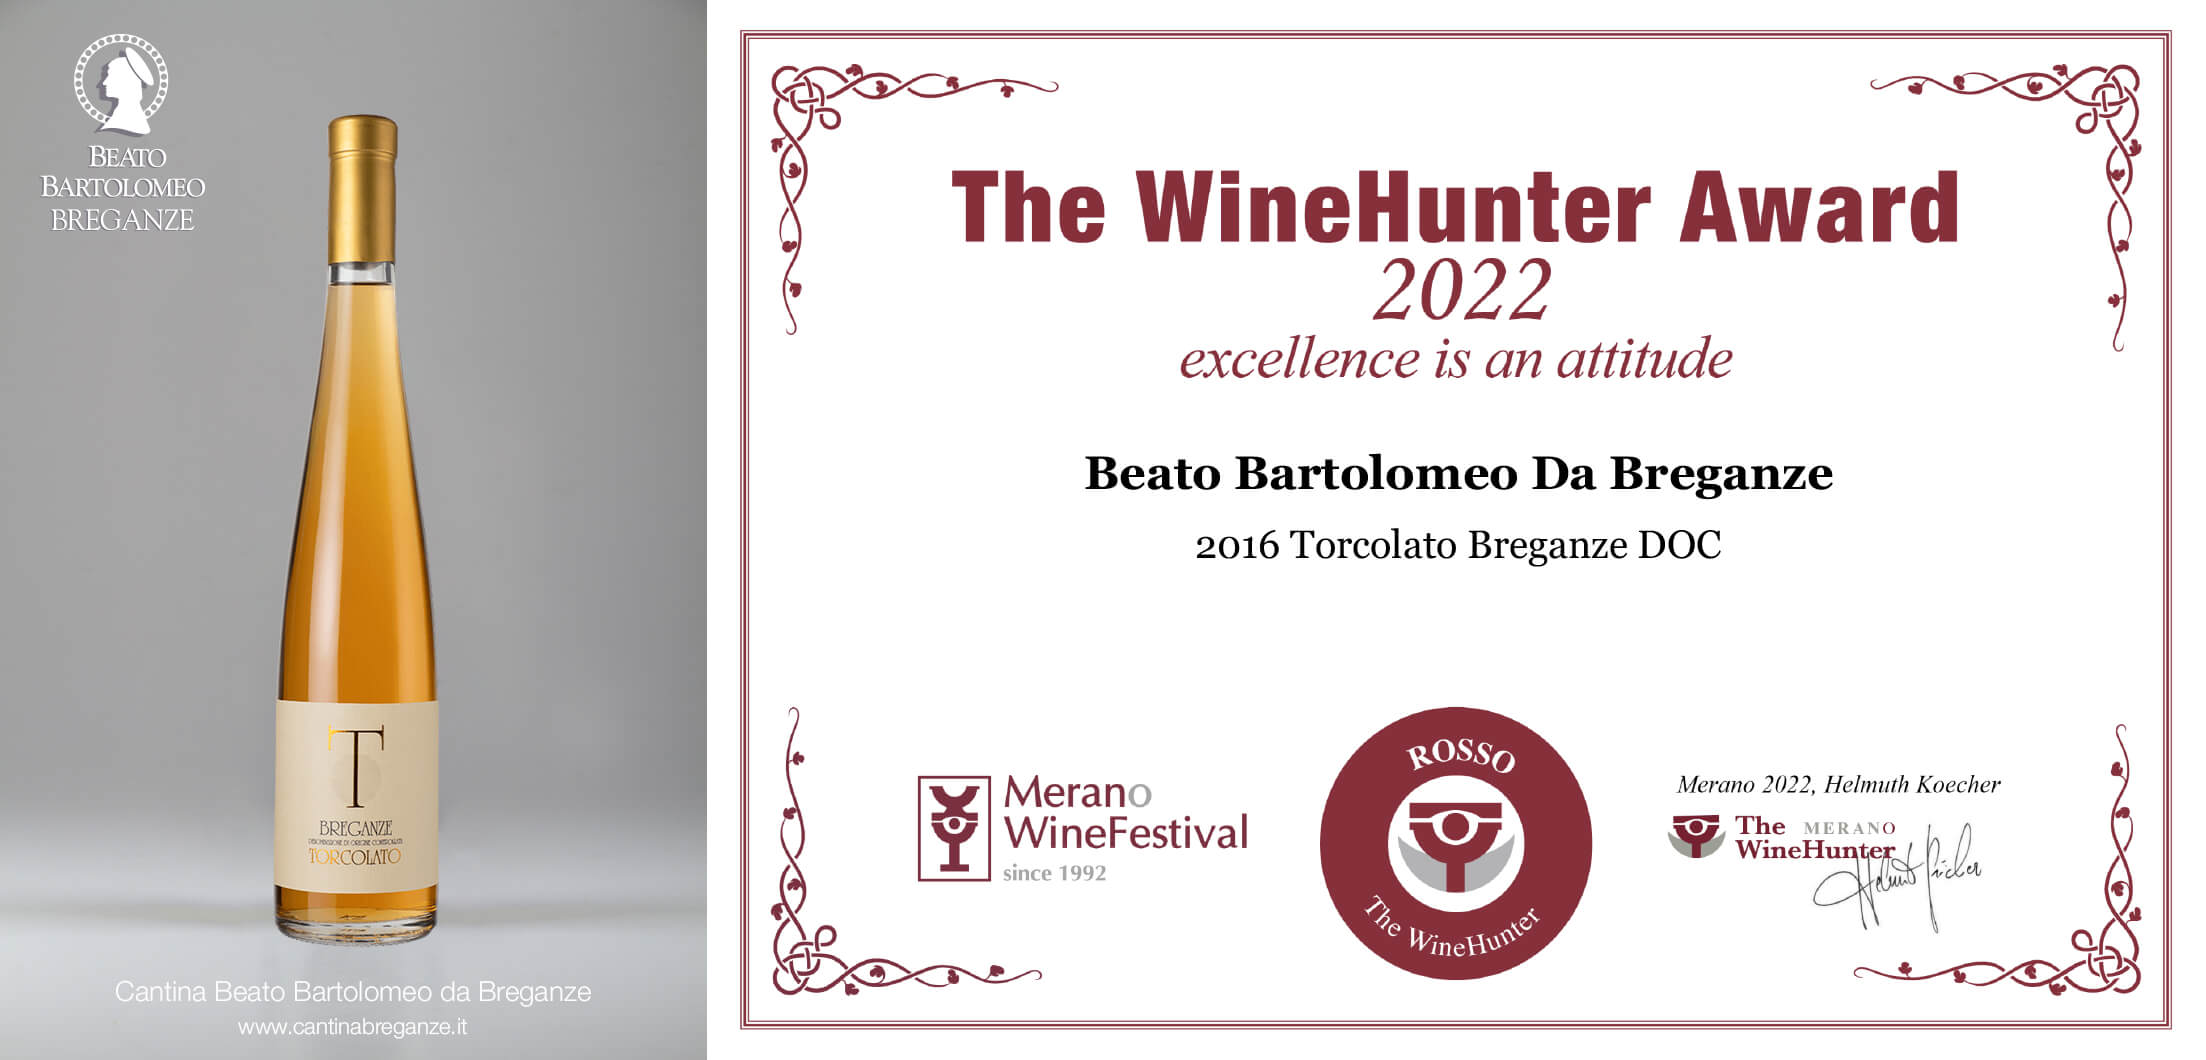 The WineHunter Award 2022